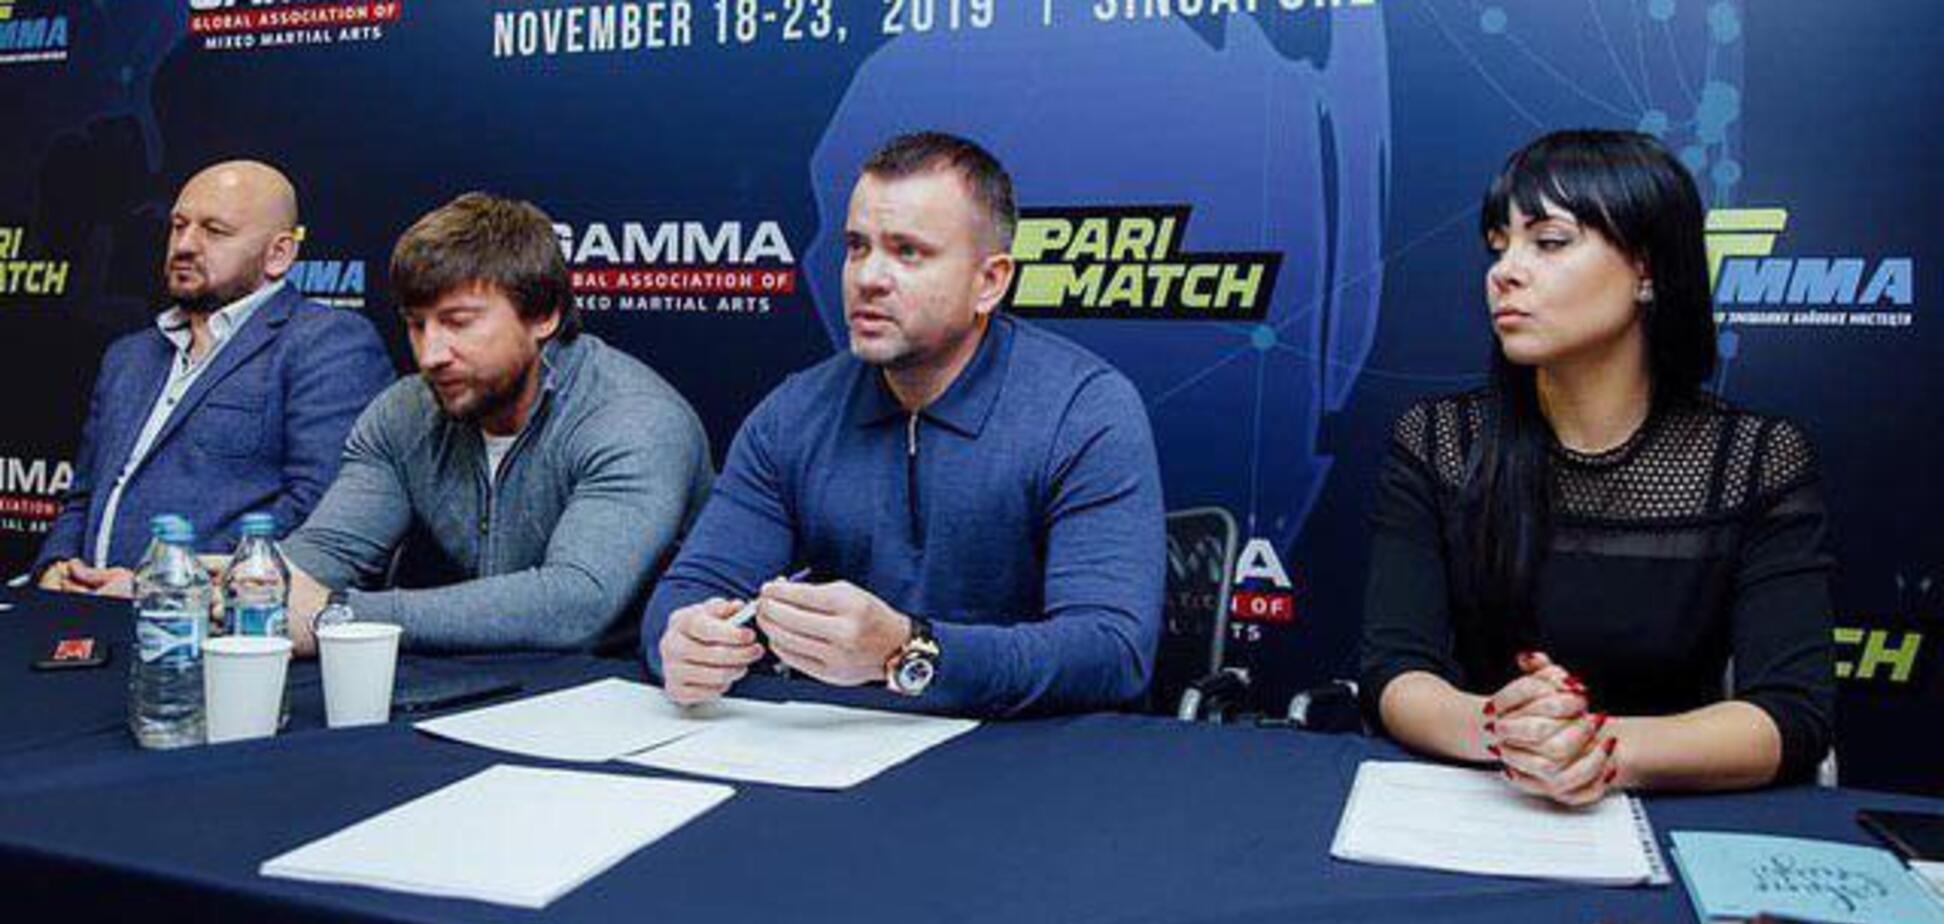 Всеукраинская Федерация по смешанным боевым искусствам - UF MMA провела годовой съезд в Киеве